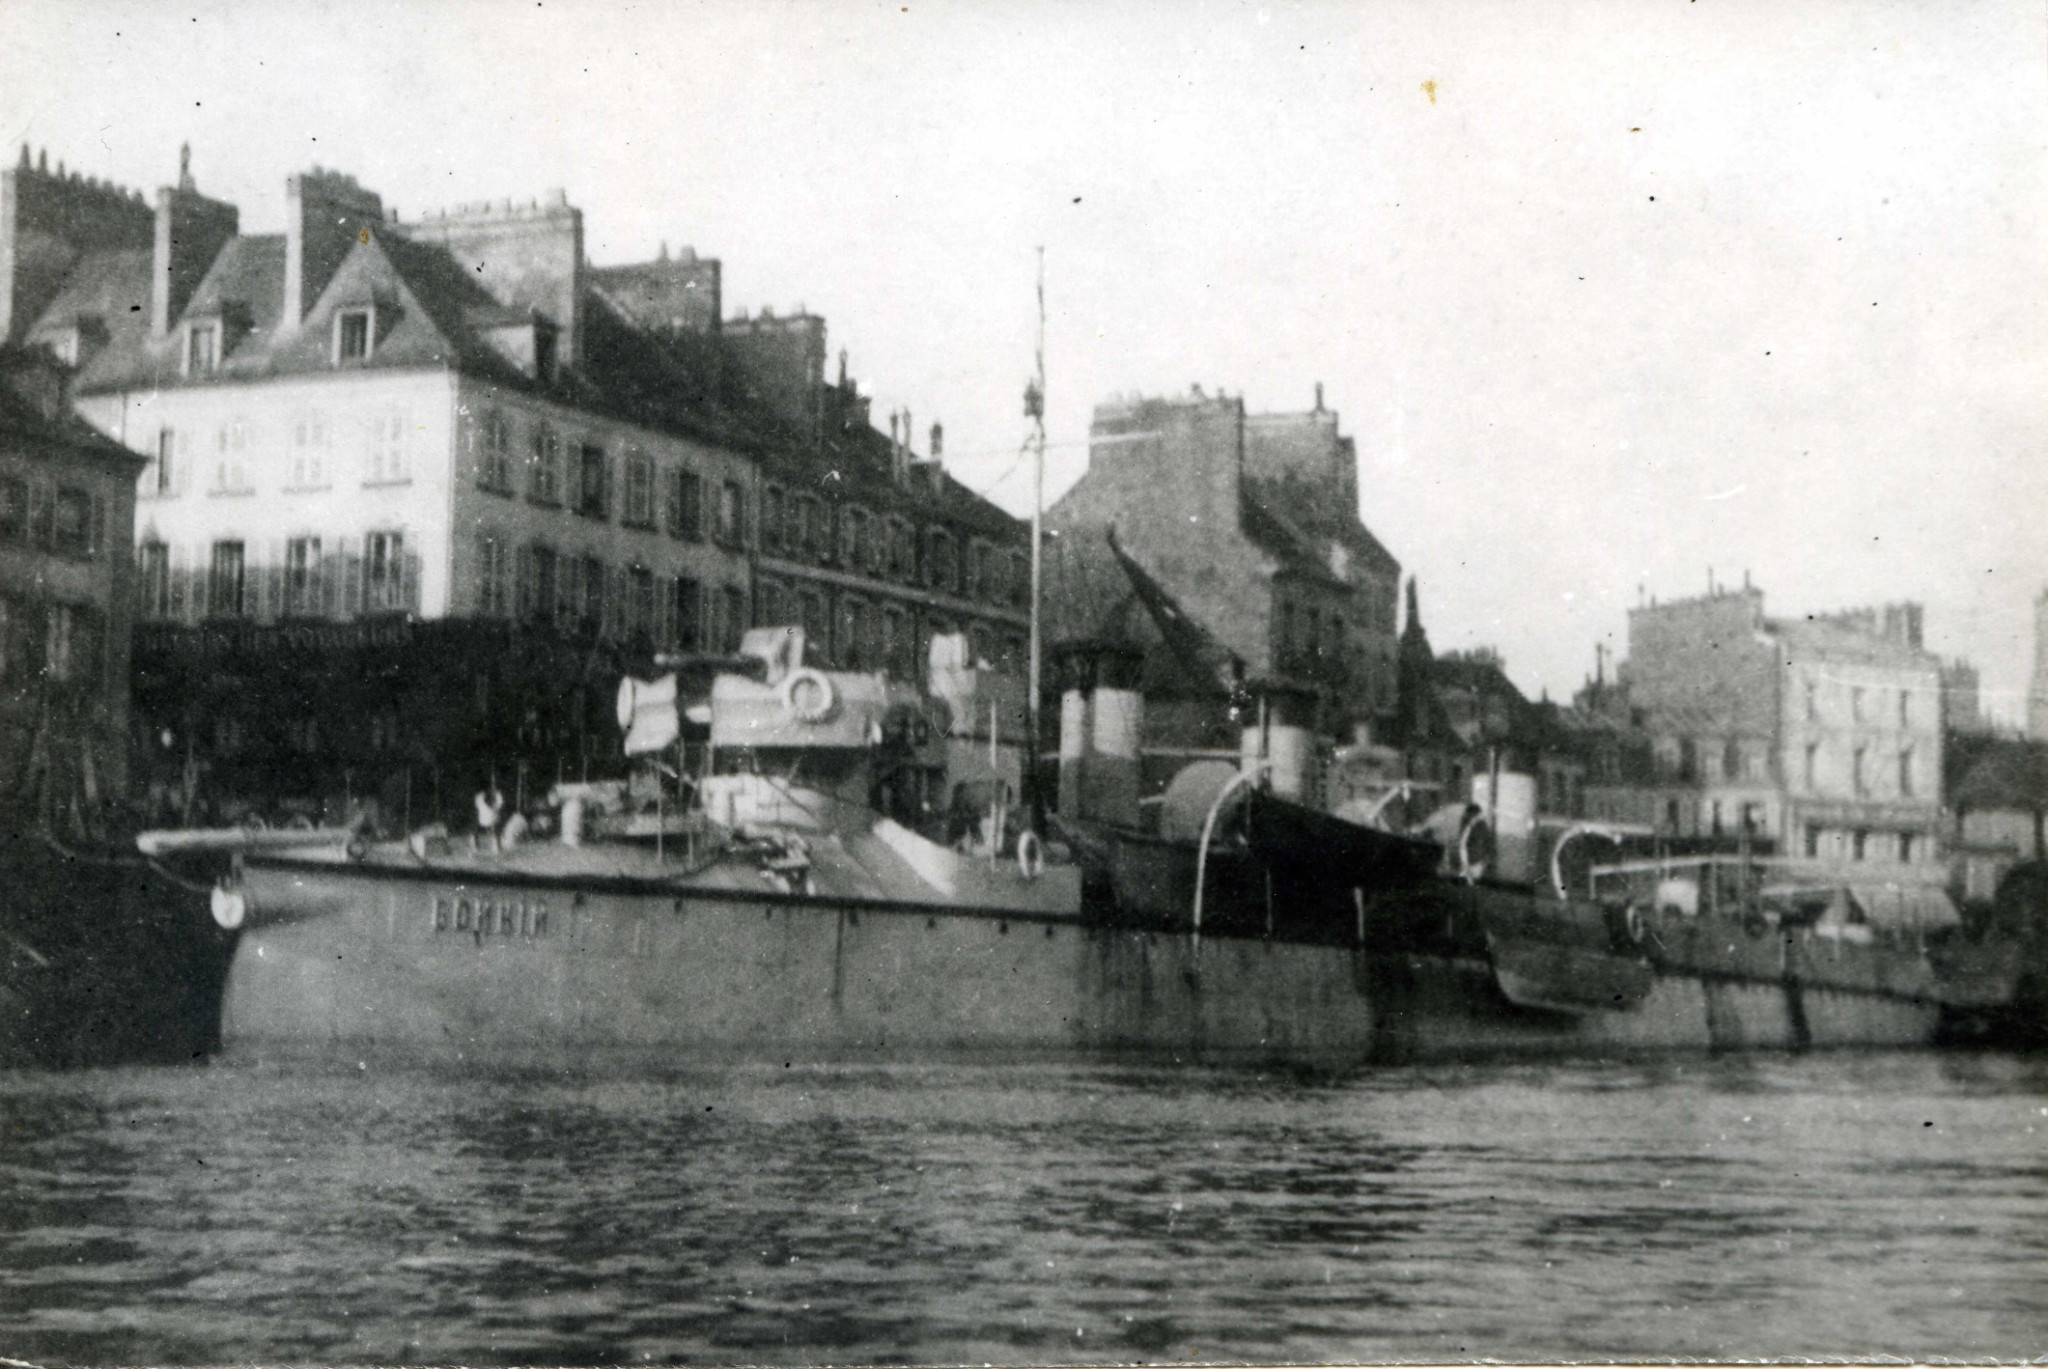 Bojkij 1902 (Cherbourg).jpg